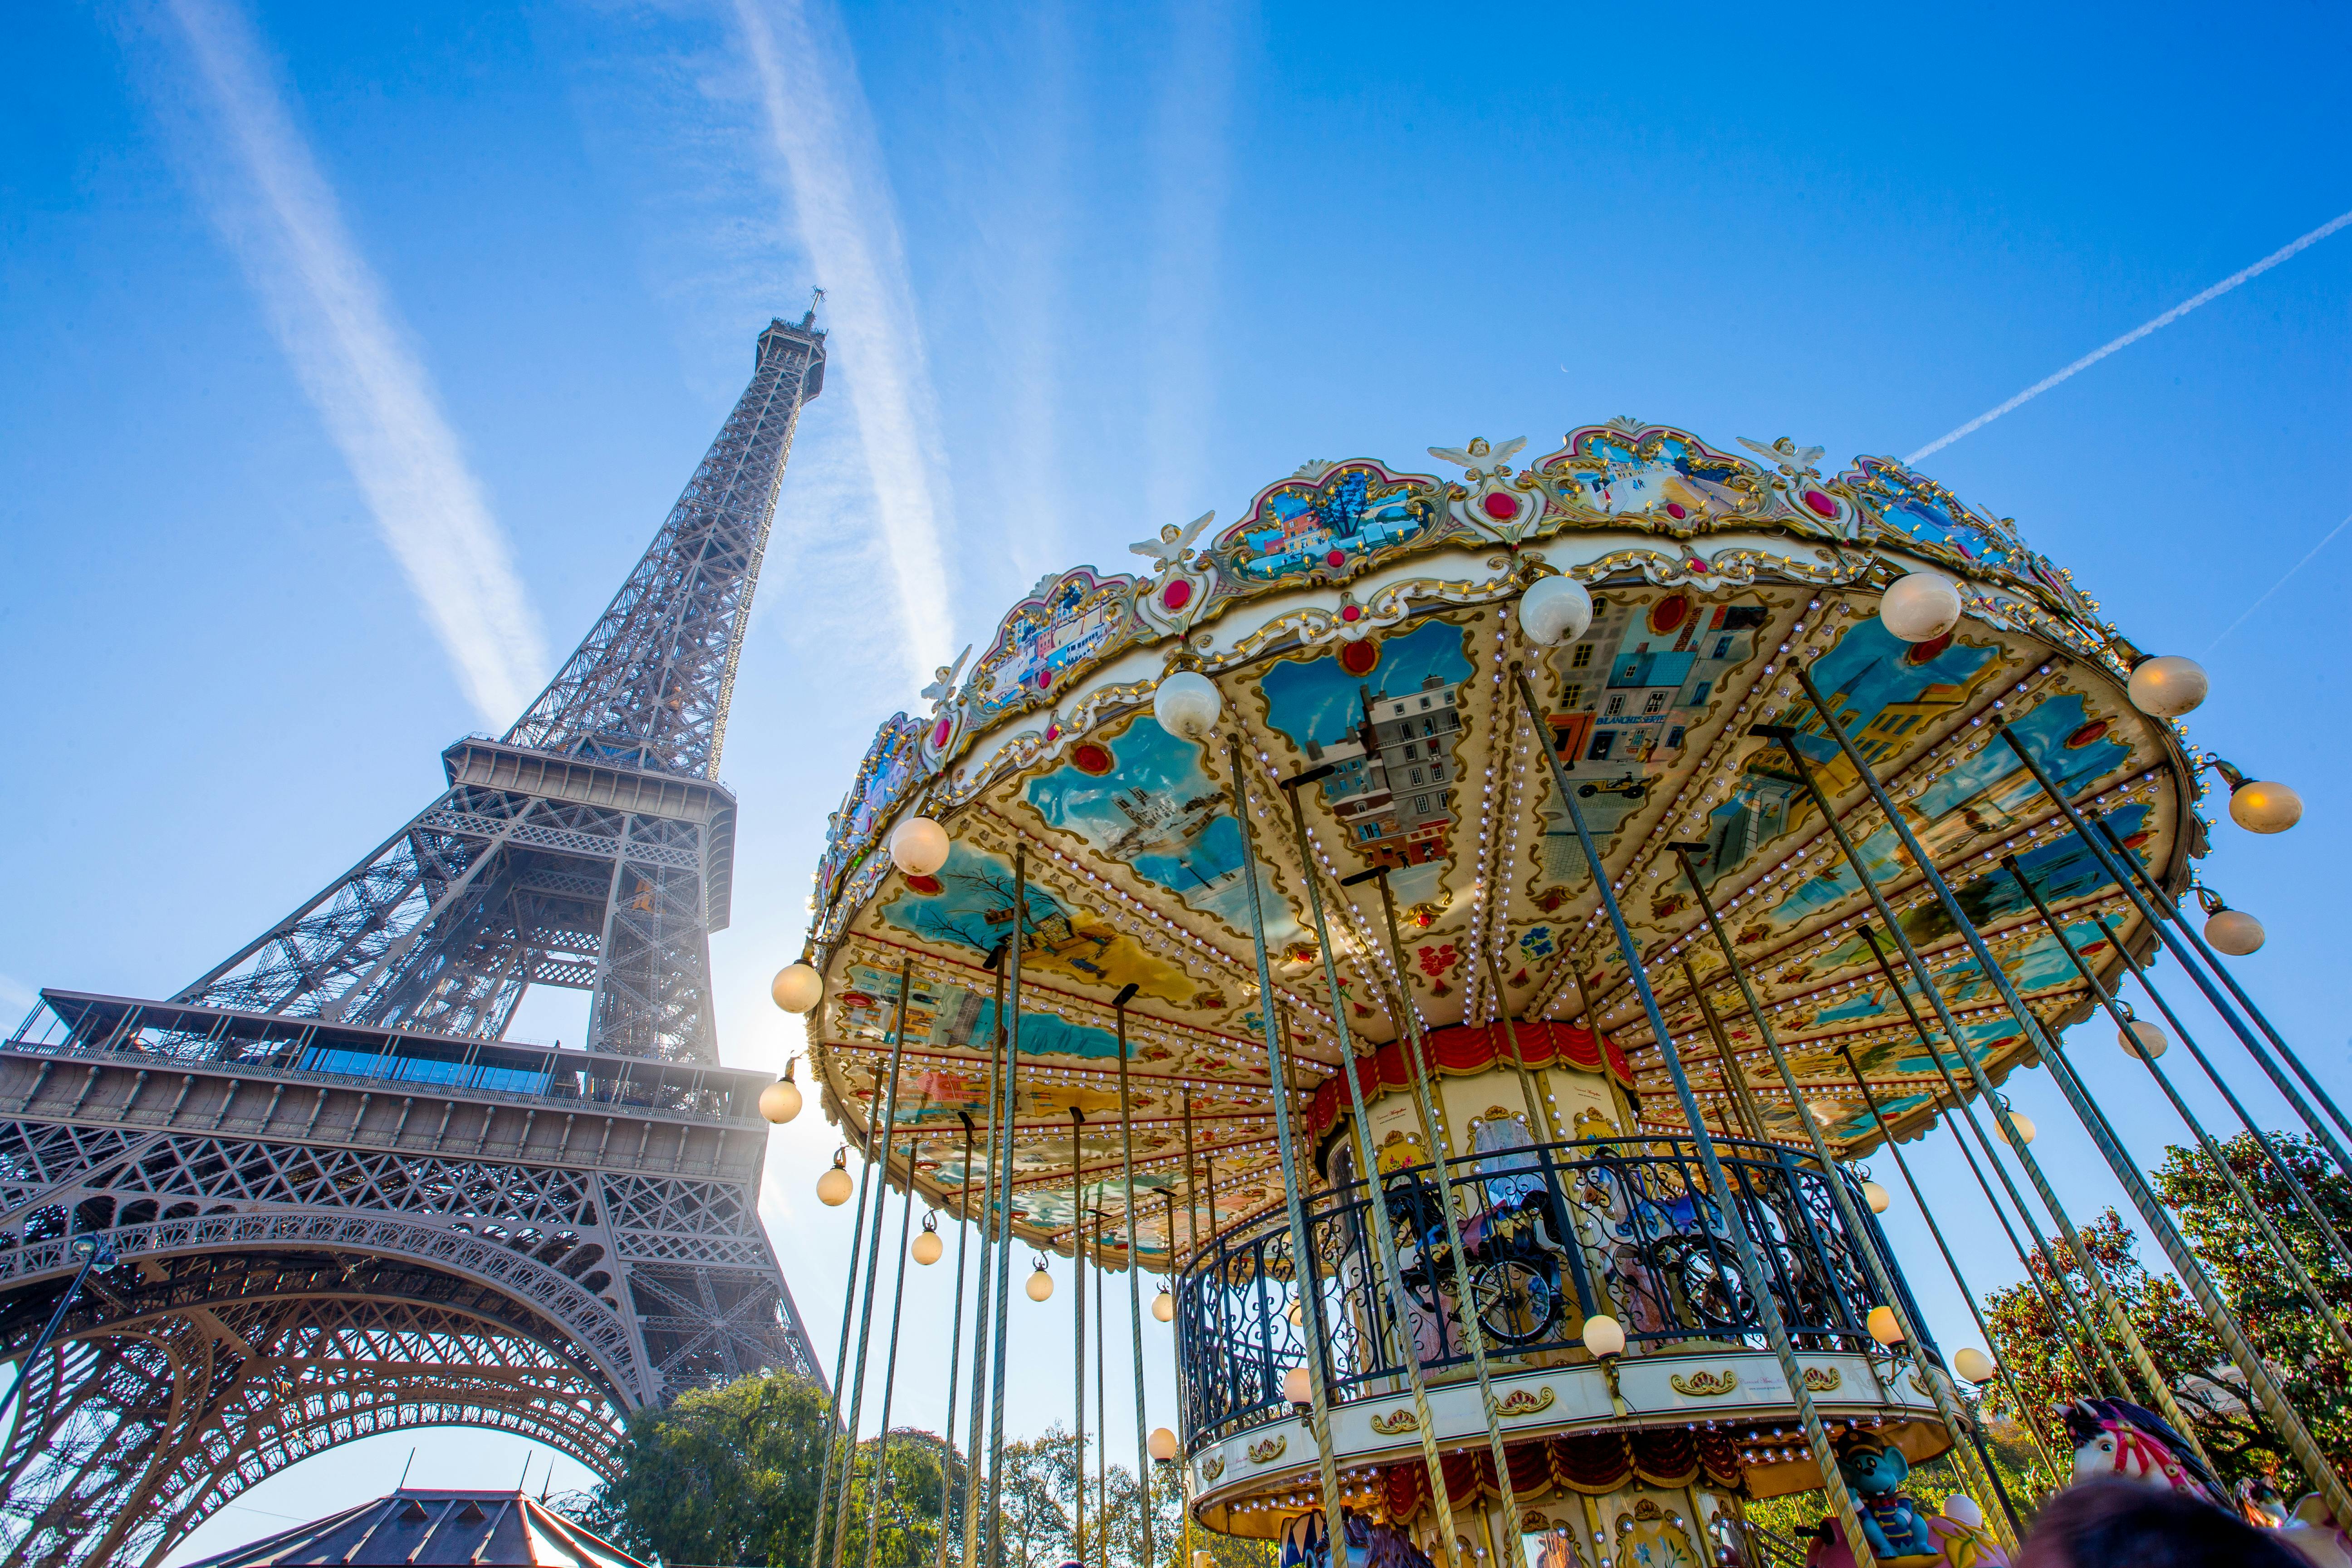 Tour privato del Louvre e della Torre Eiffel con biglietti salta fila